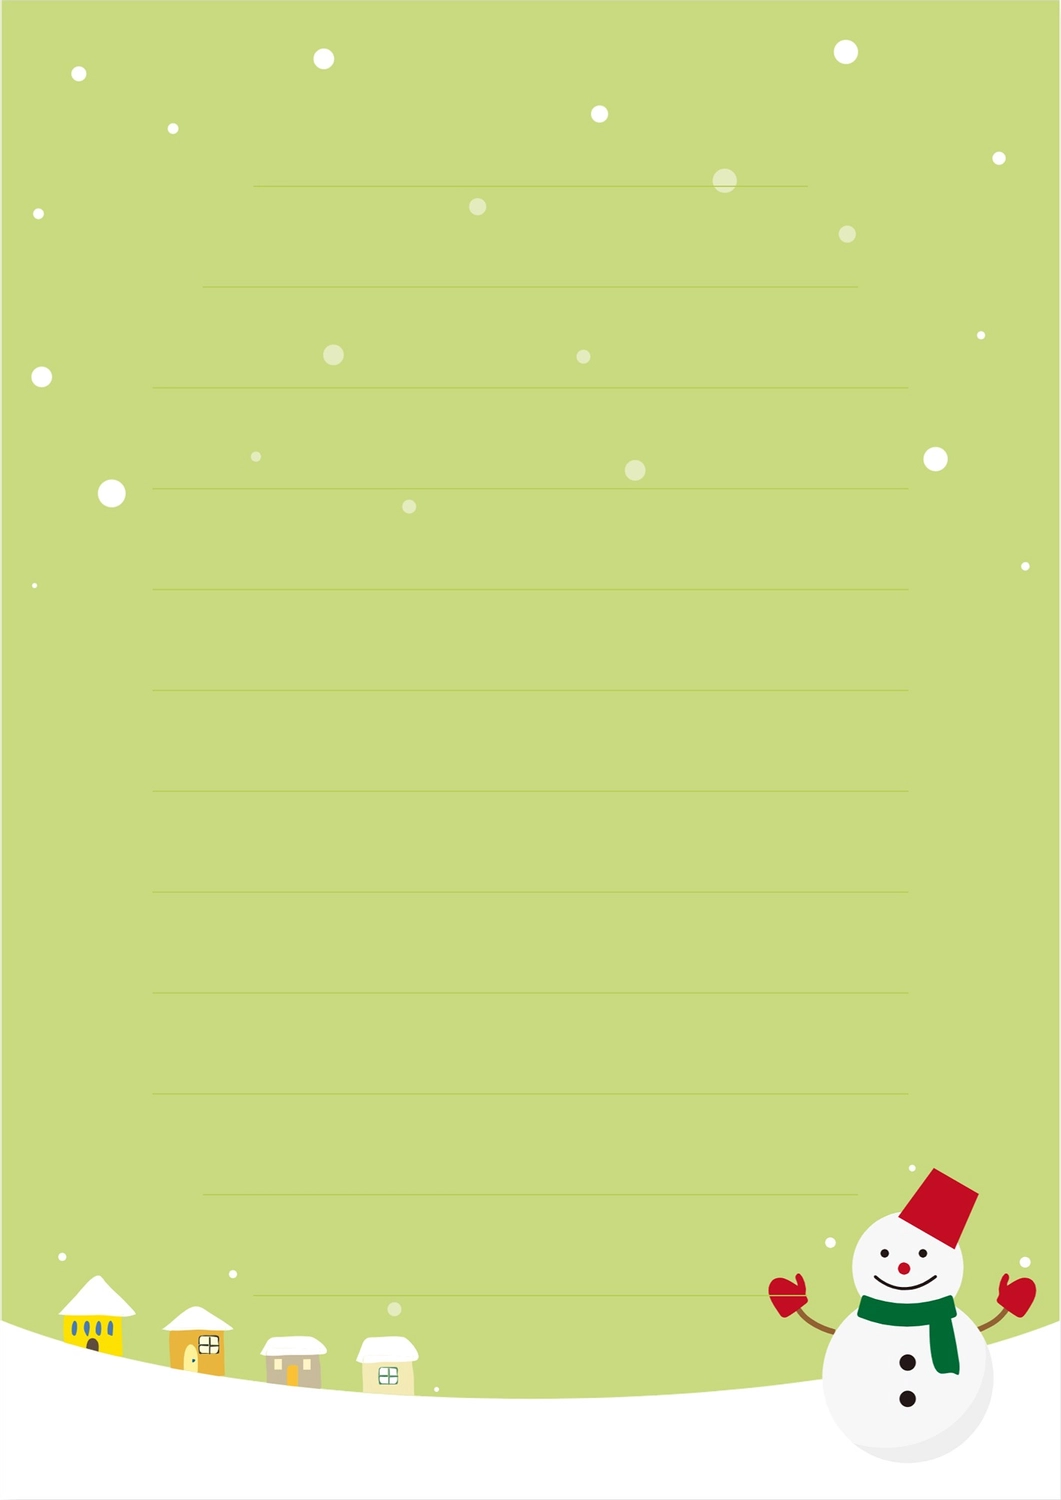 便箋（赤い手袋つけた雪だるま柄）, スッキリ, デザイン, 作成, 便箋テンプレート